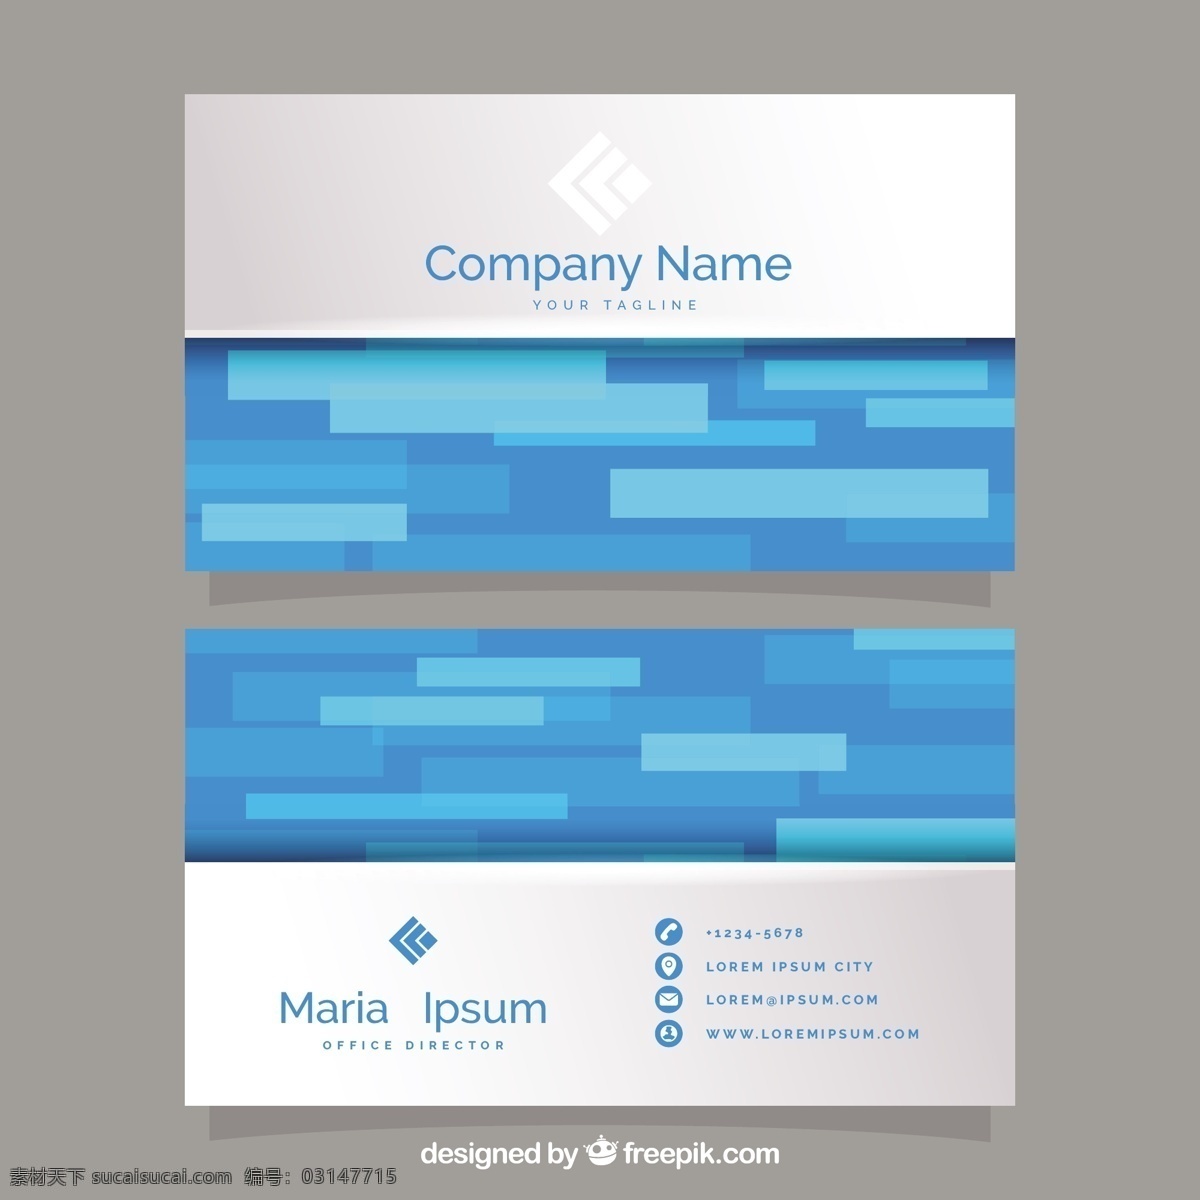 蓝色调形名片 商标 名片 商务 抽象 卡片 模板 蓝色 办公室 形状 颜色 展示 文具 公司 抽象标志 企业标识 品牌 现代